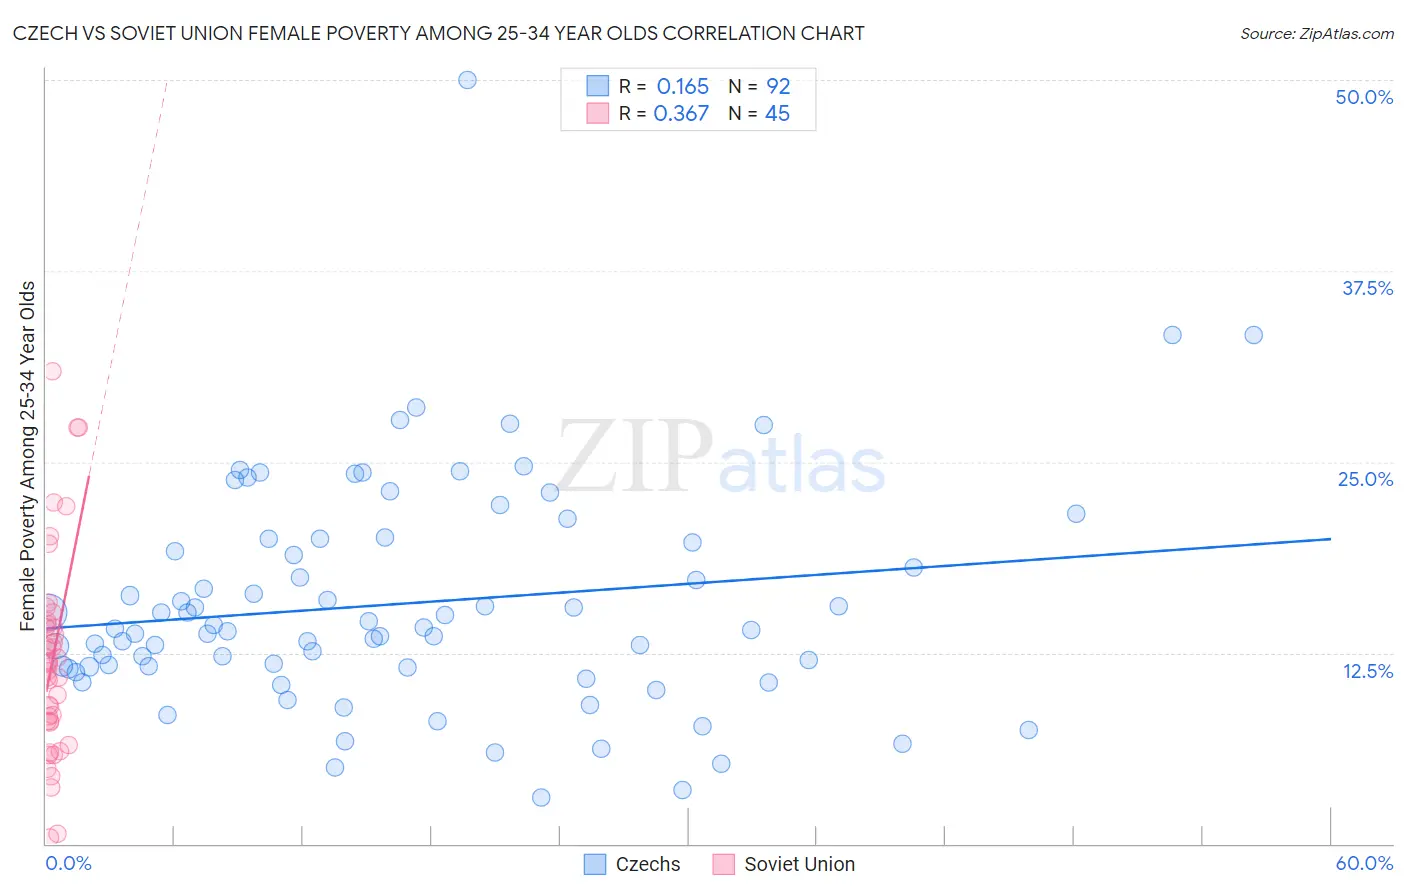 Czech vs Soviet Union Female Poverty Among 25-34 Year Olds